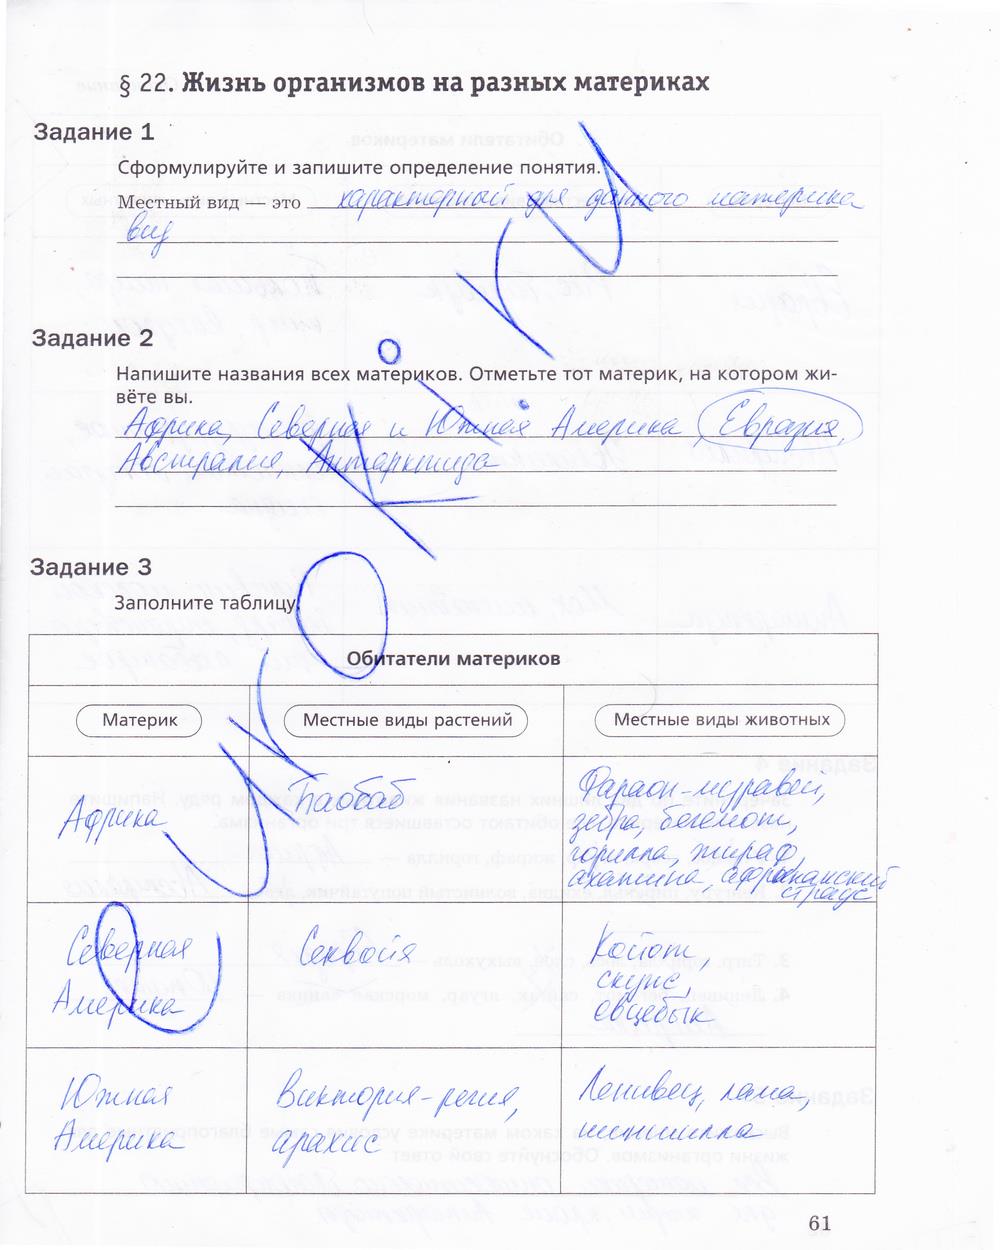 гдз 5 класс рабочая тетрадь страница 61 биология Корнилова, Николаев